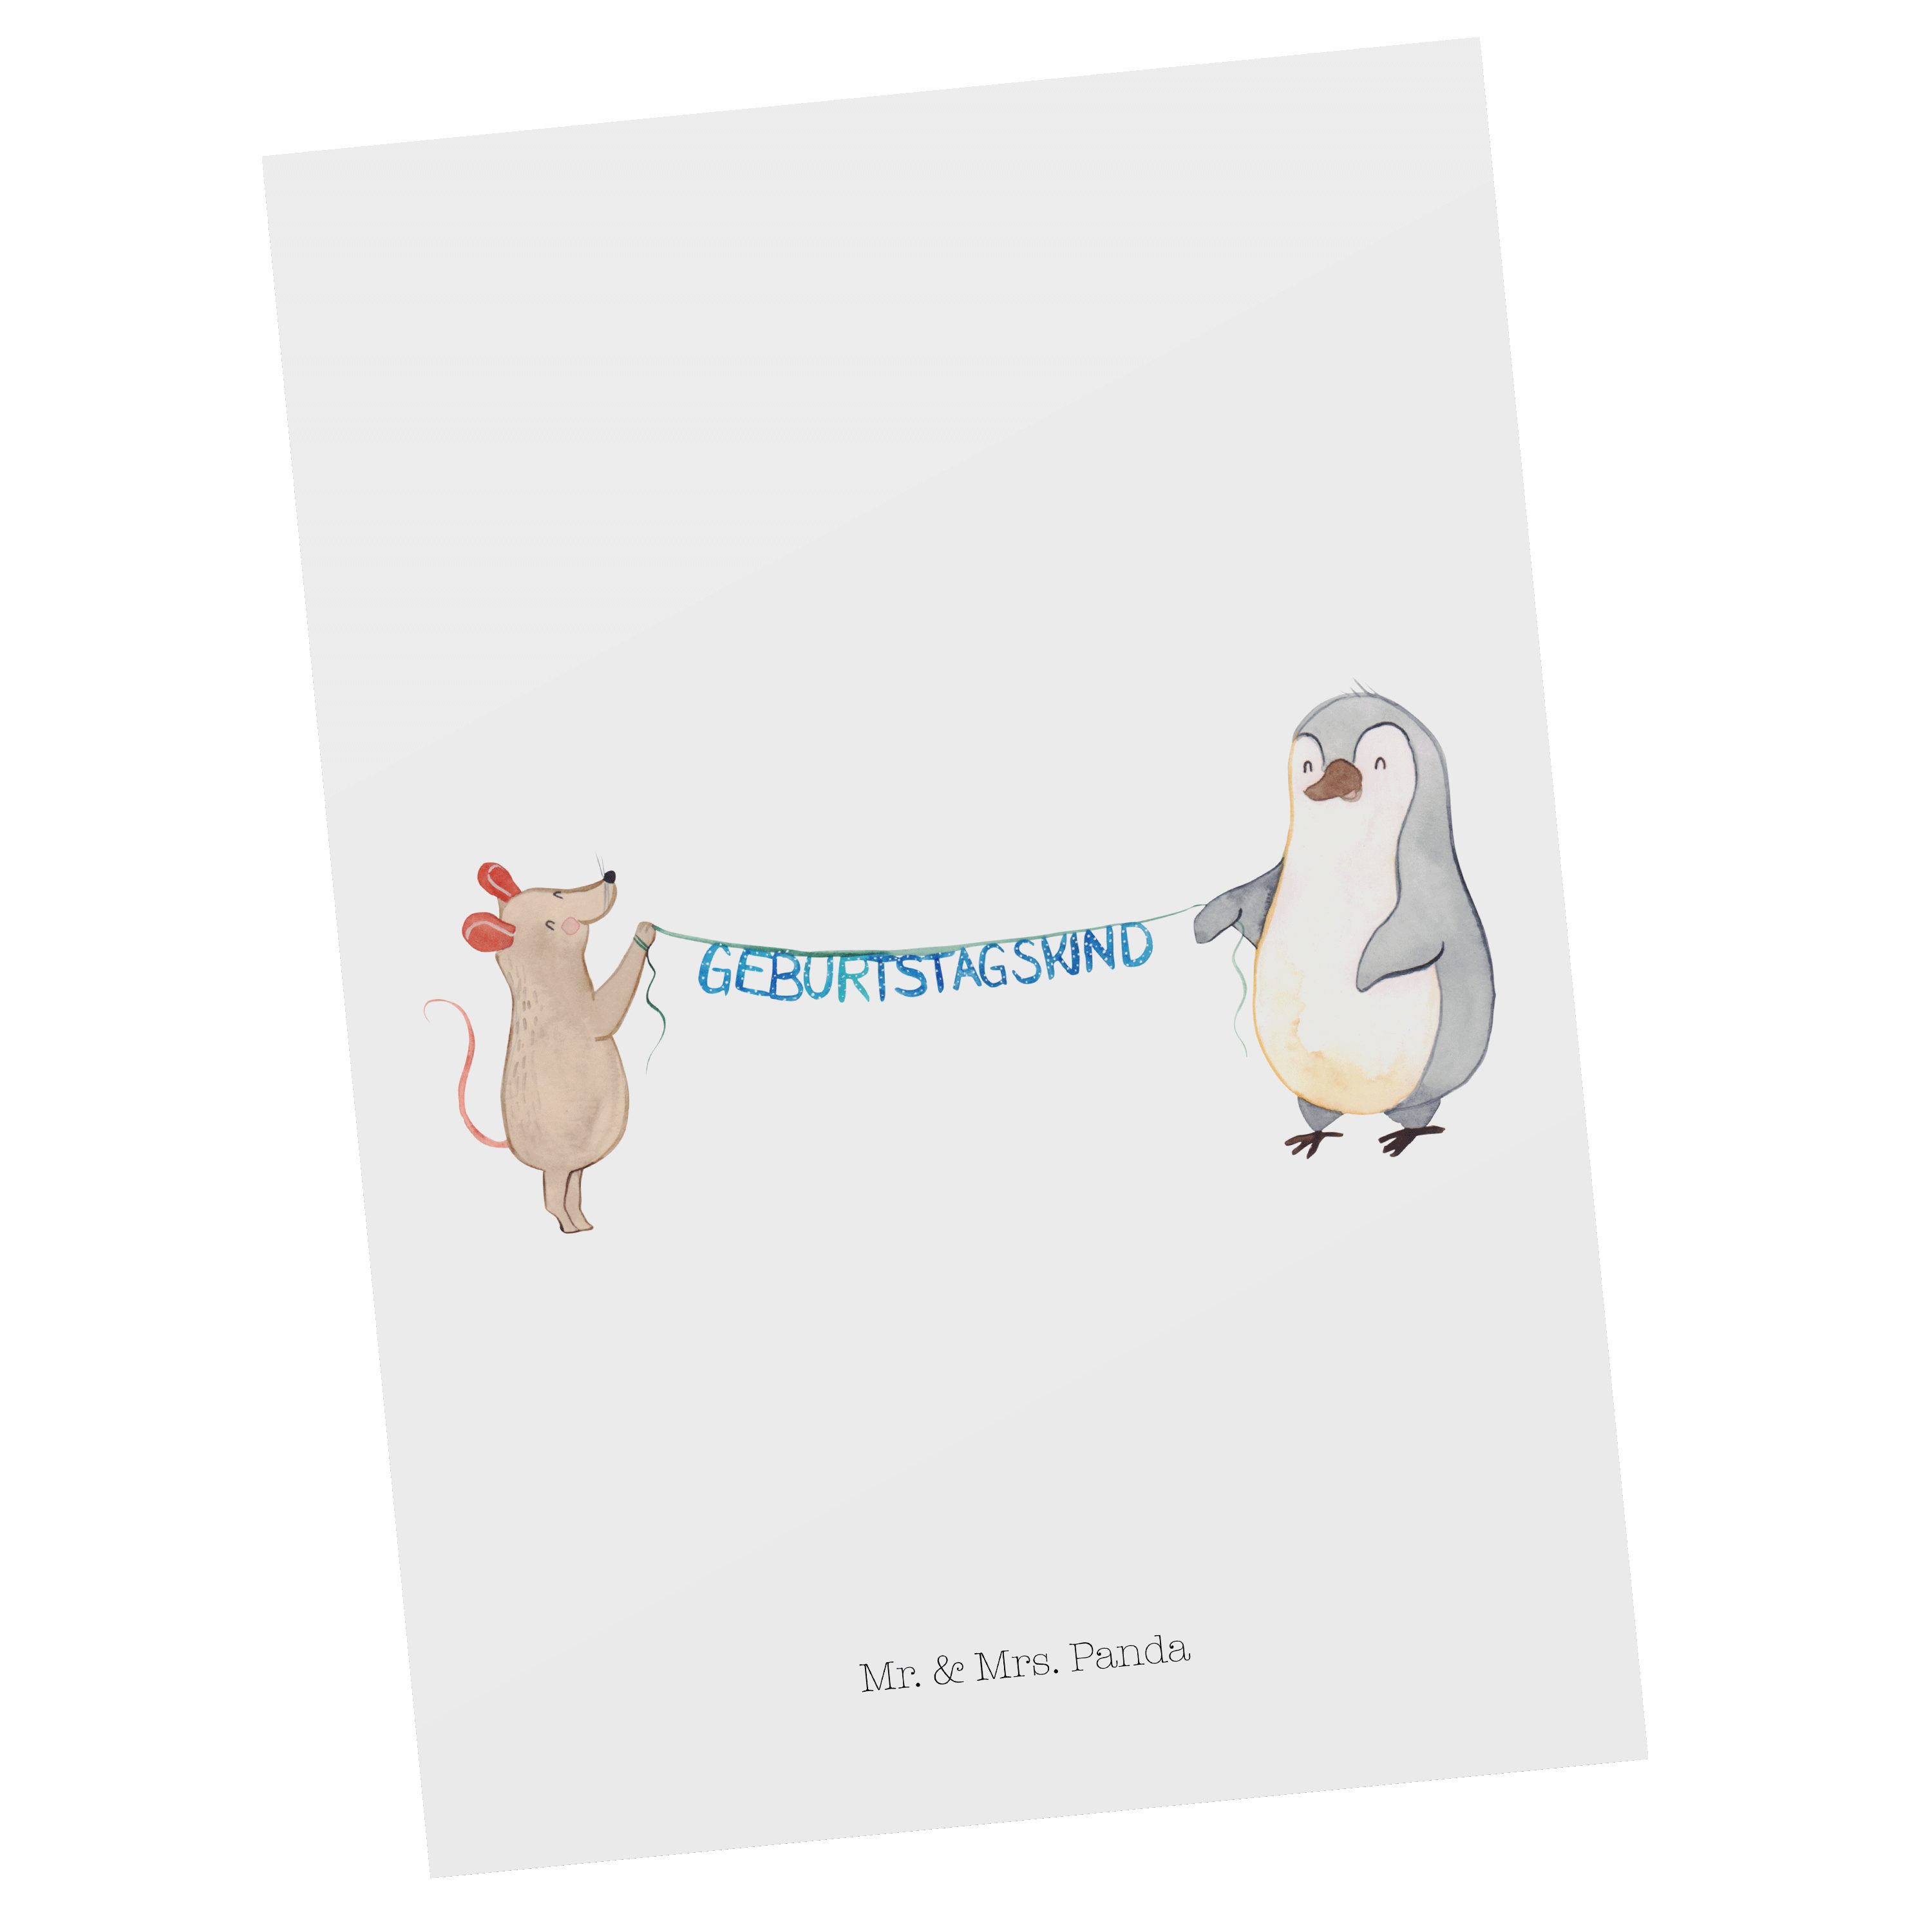 Mr. & Mrs. Geburtstagsfeier, Geburtst Weiß Panda Geschenk, - Maus Pinguin - Postkarte Geburtstag